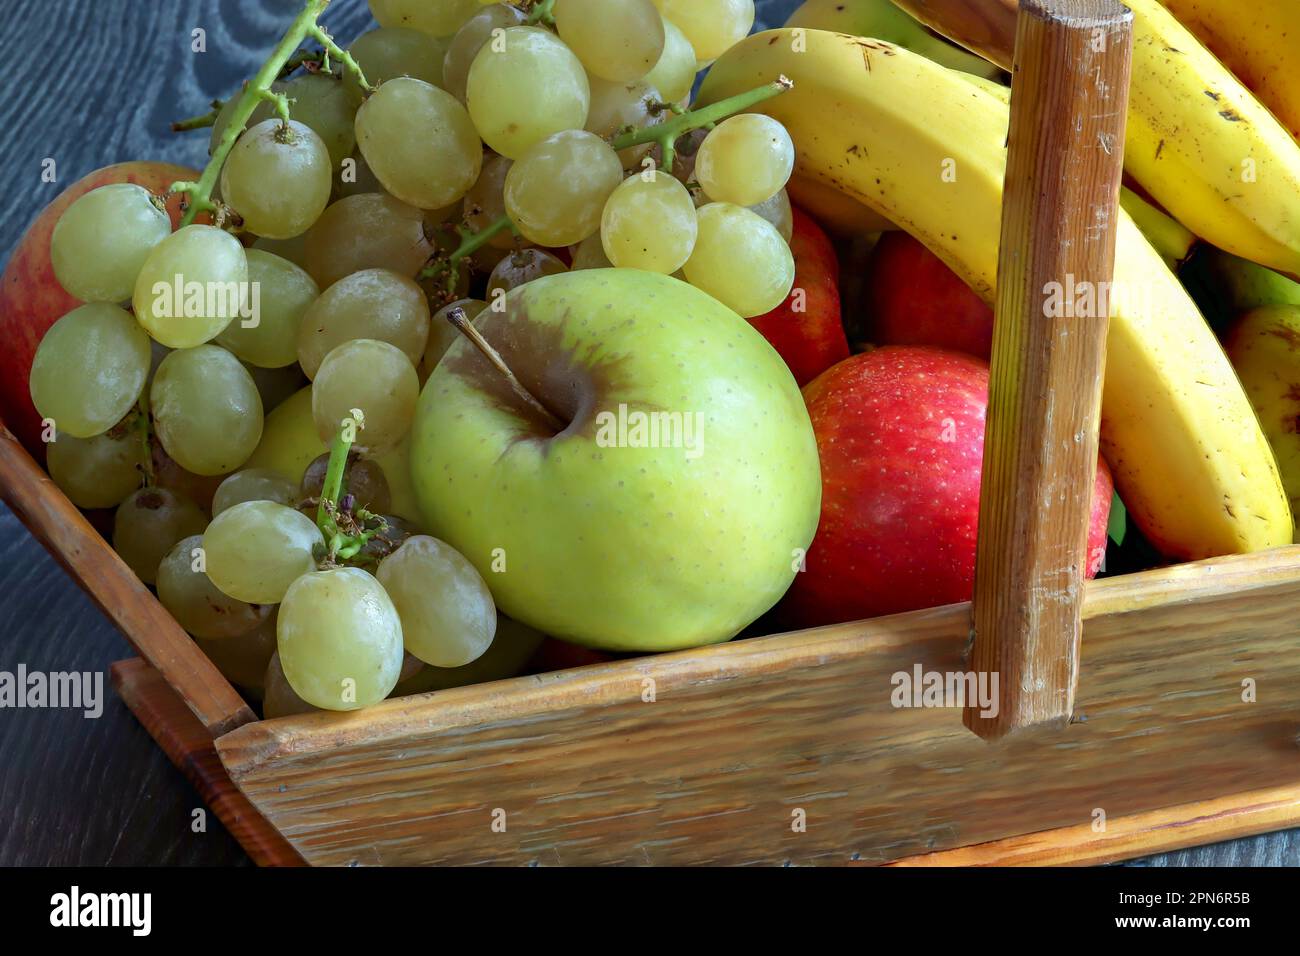 Trauben, Goldener Apfel, Bicolor und Banane in einem Erntekorb Stockfoto